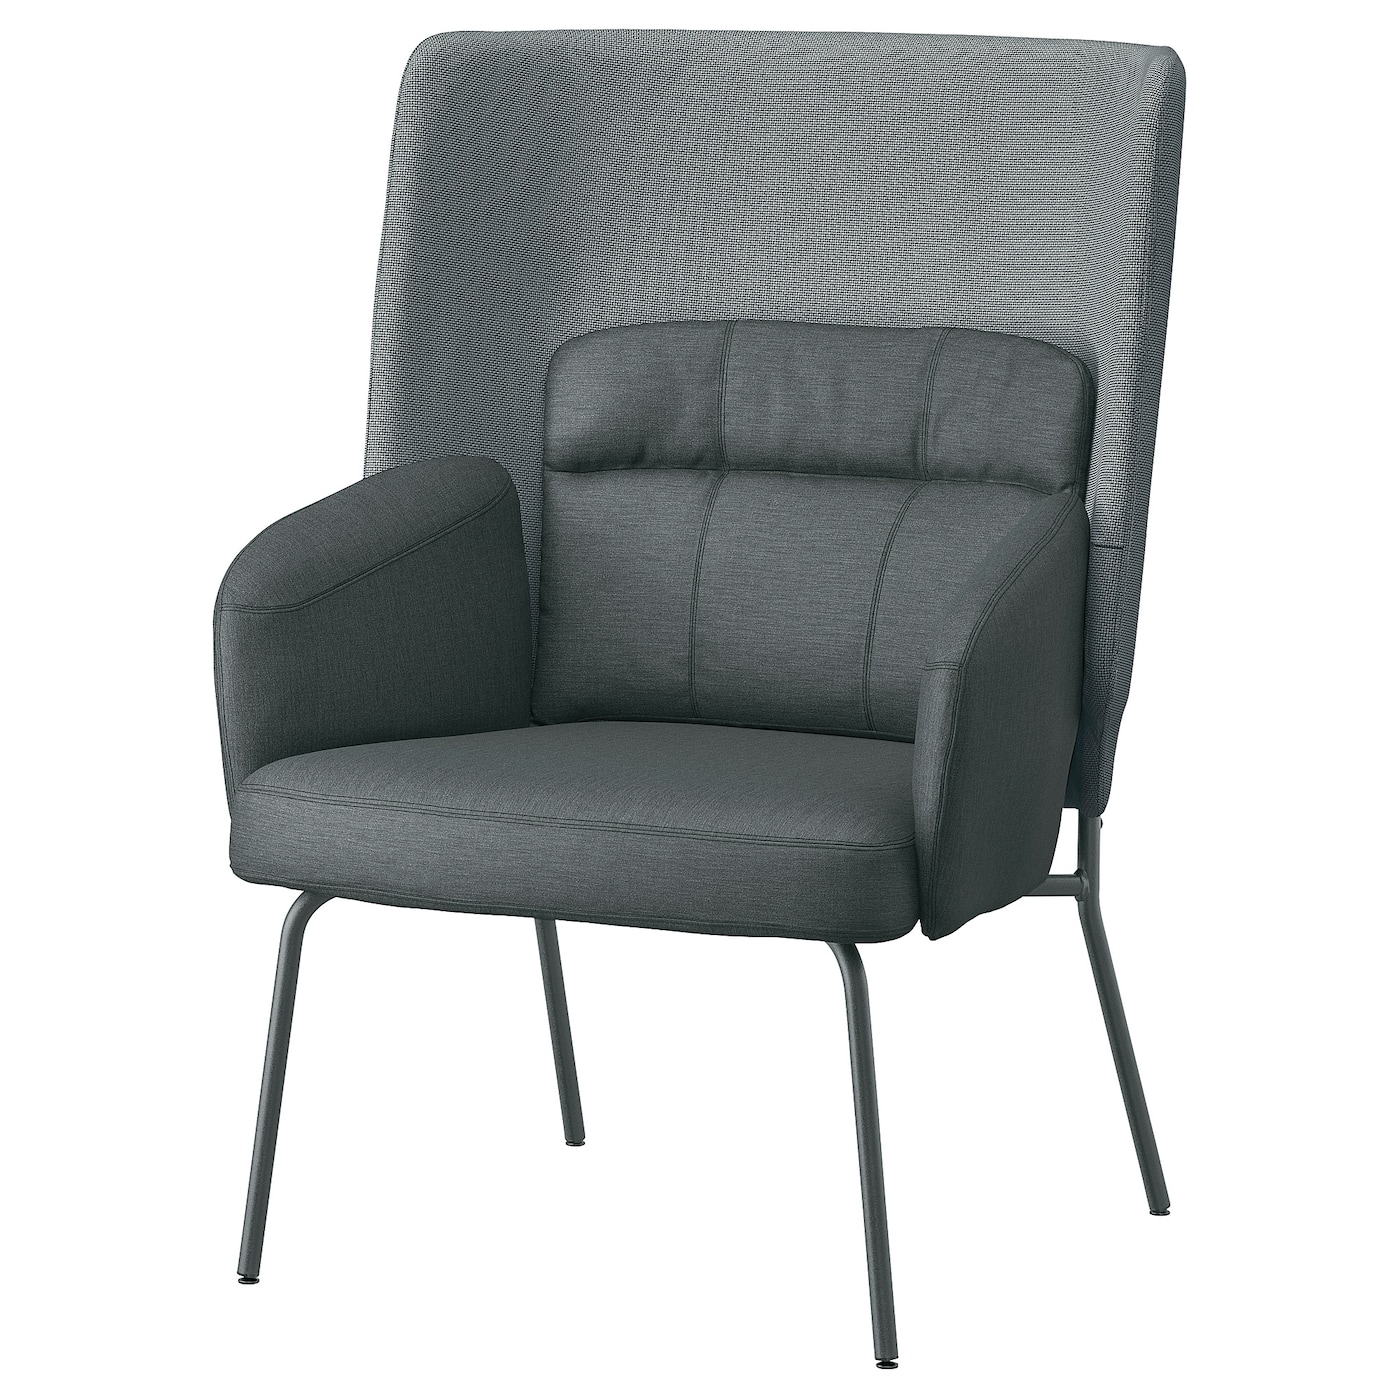 БИНГСТА Кресло с высокой спинкой, Виссле темно-серый/Кабуса темно-серый BINGSTA IKEA